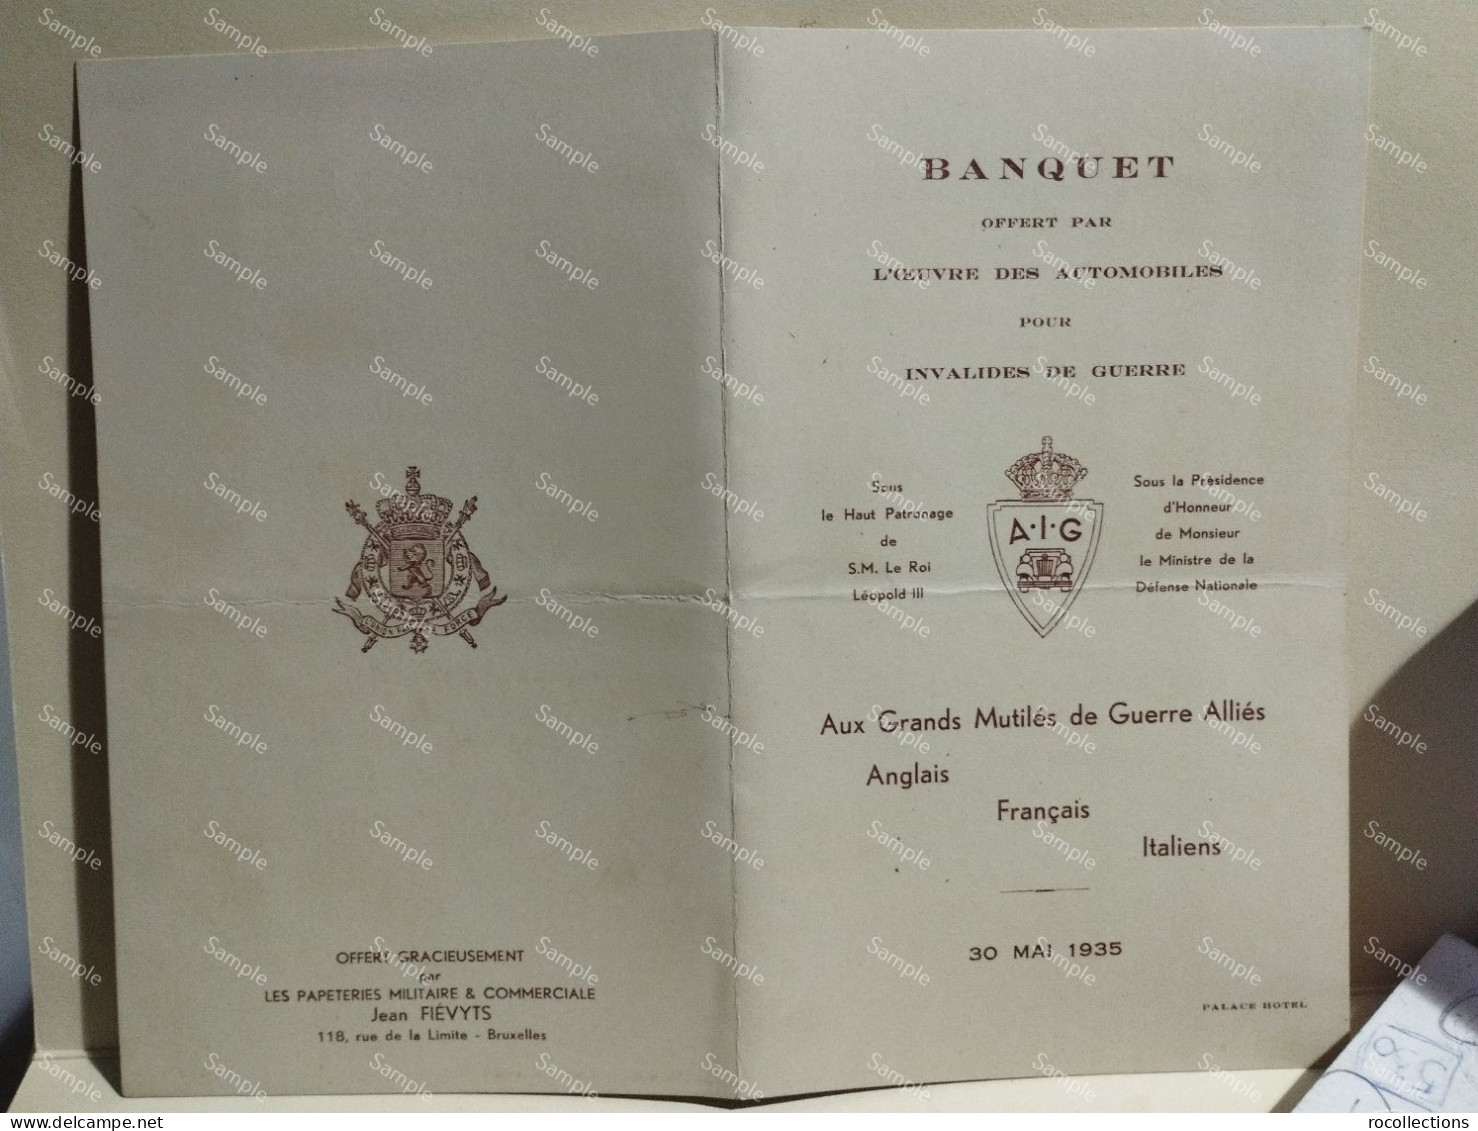 France Menù Programme BANQUET Invalides De Guerre Annglais Francais Italiens 30 Mai 1935 Palace Hotel Bruxelles. Signed - Menu